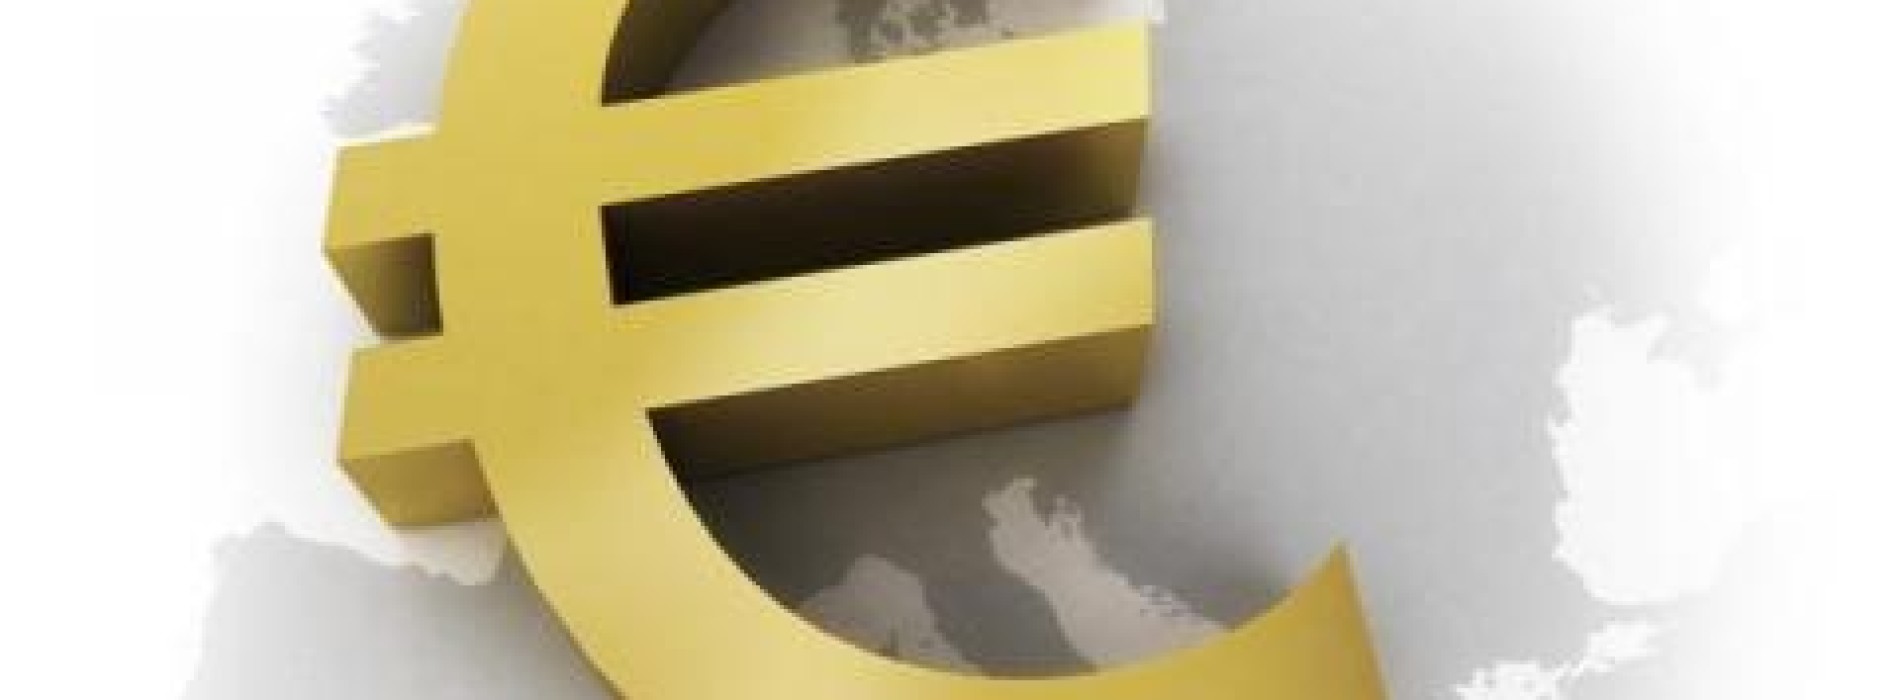 Deflacja w strefie euro największa w historii